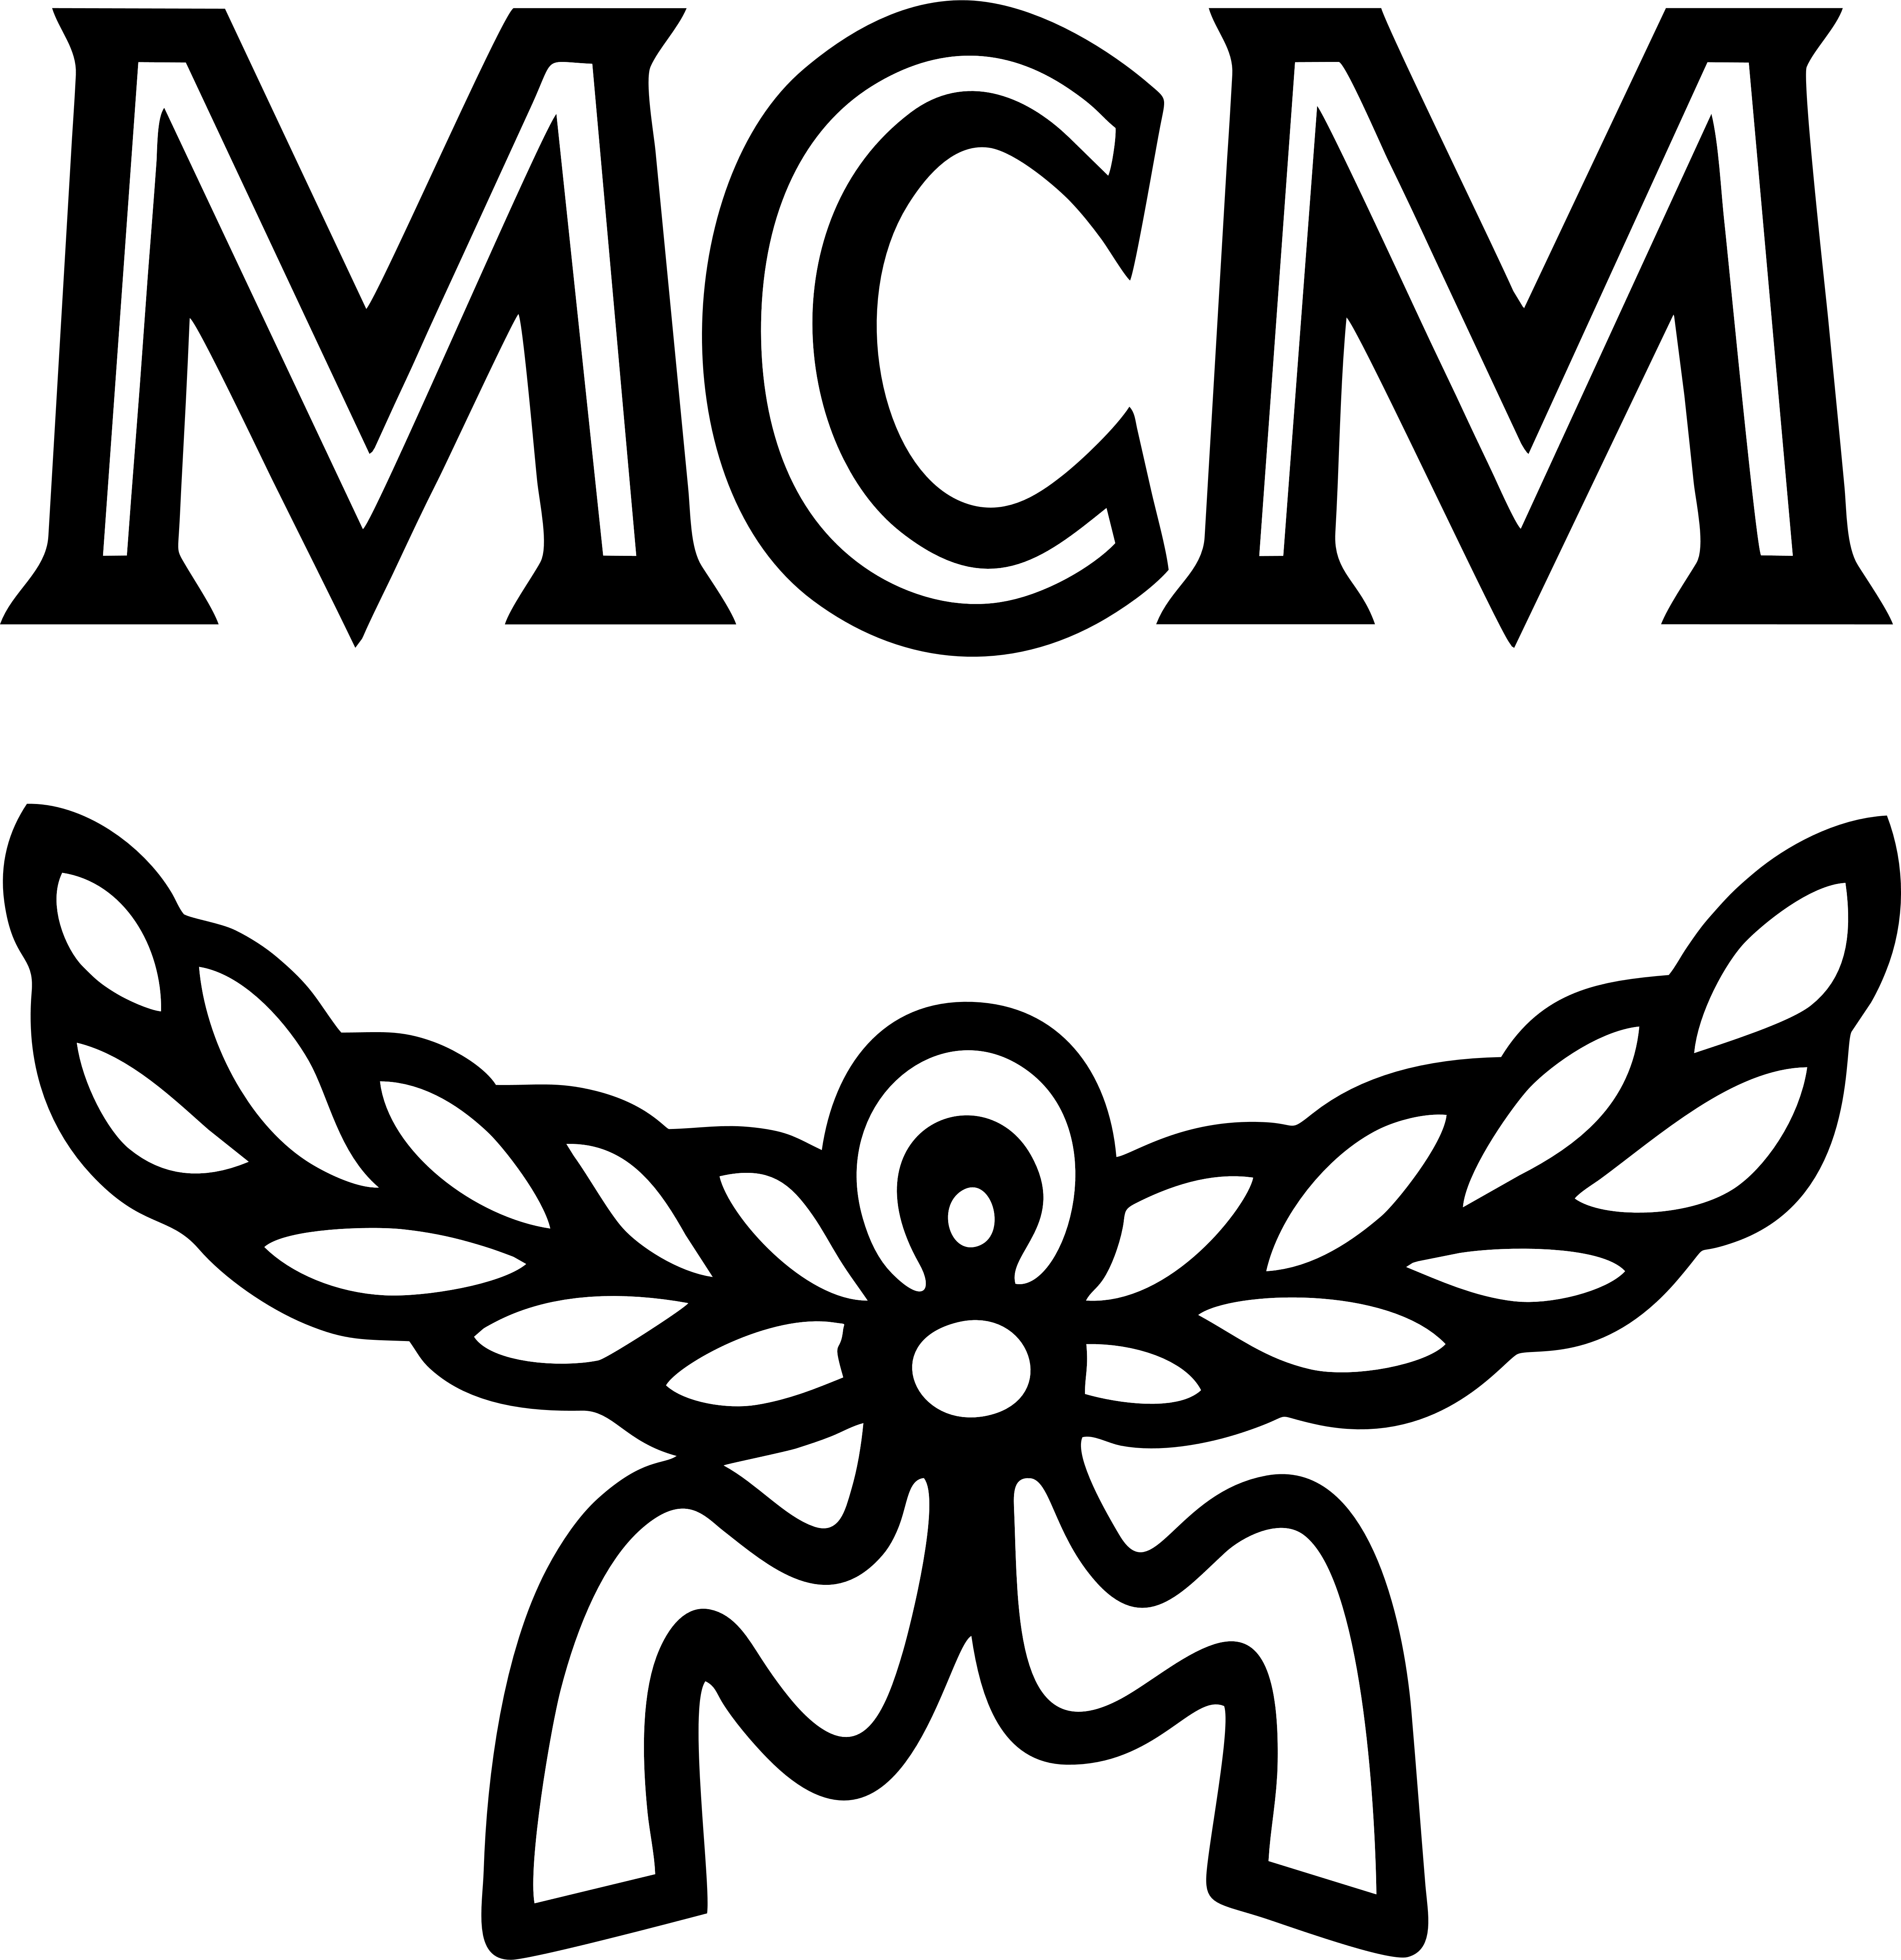 MCM – Logos Download